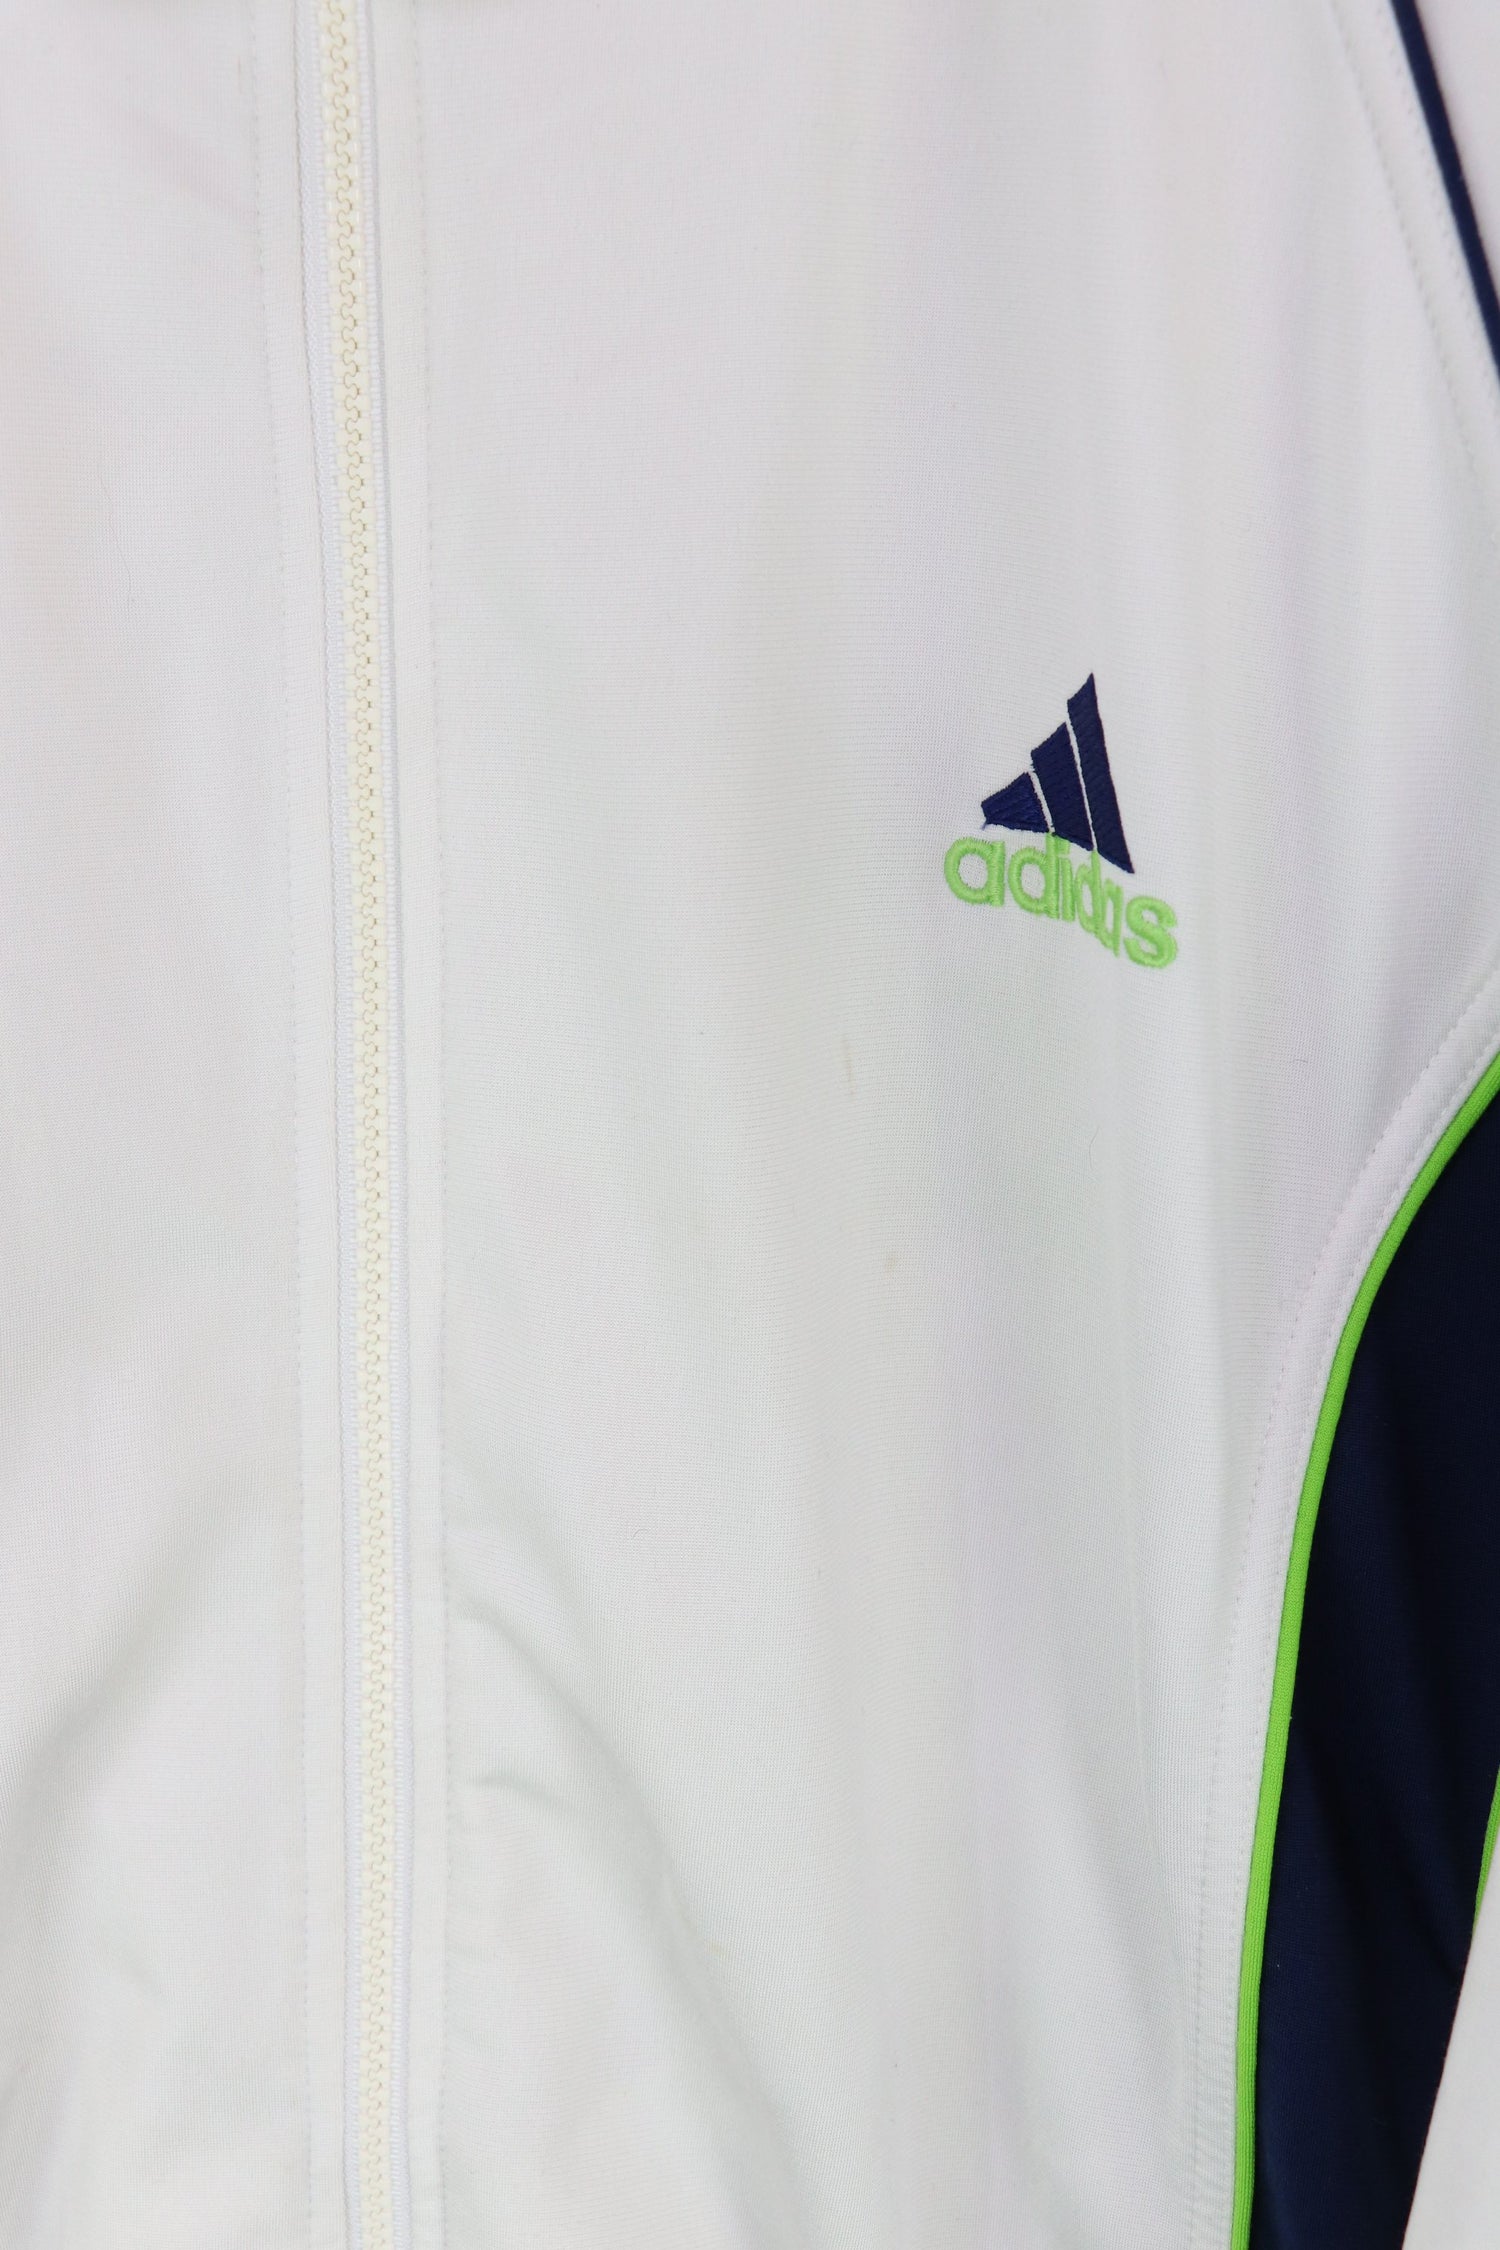 Adidas Track Jacket White XL